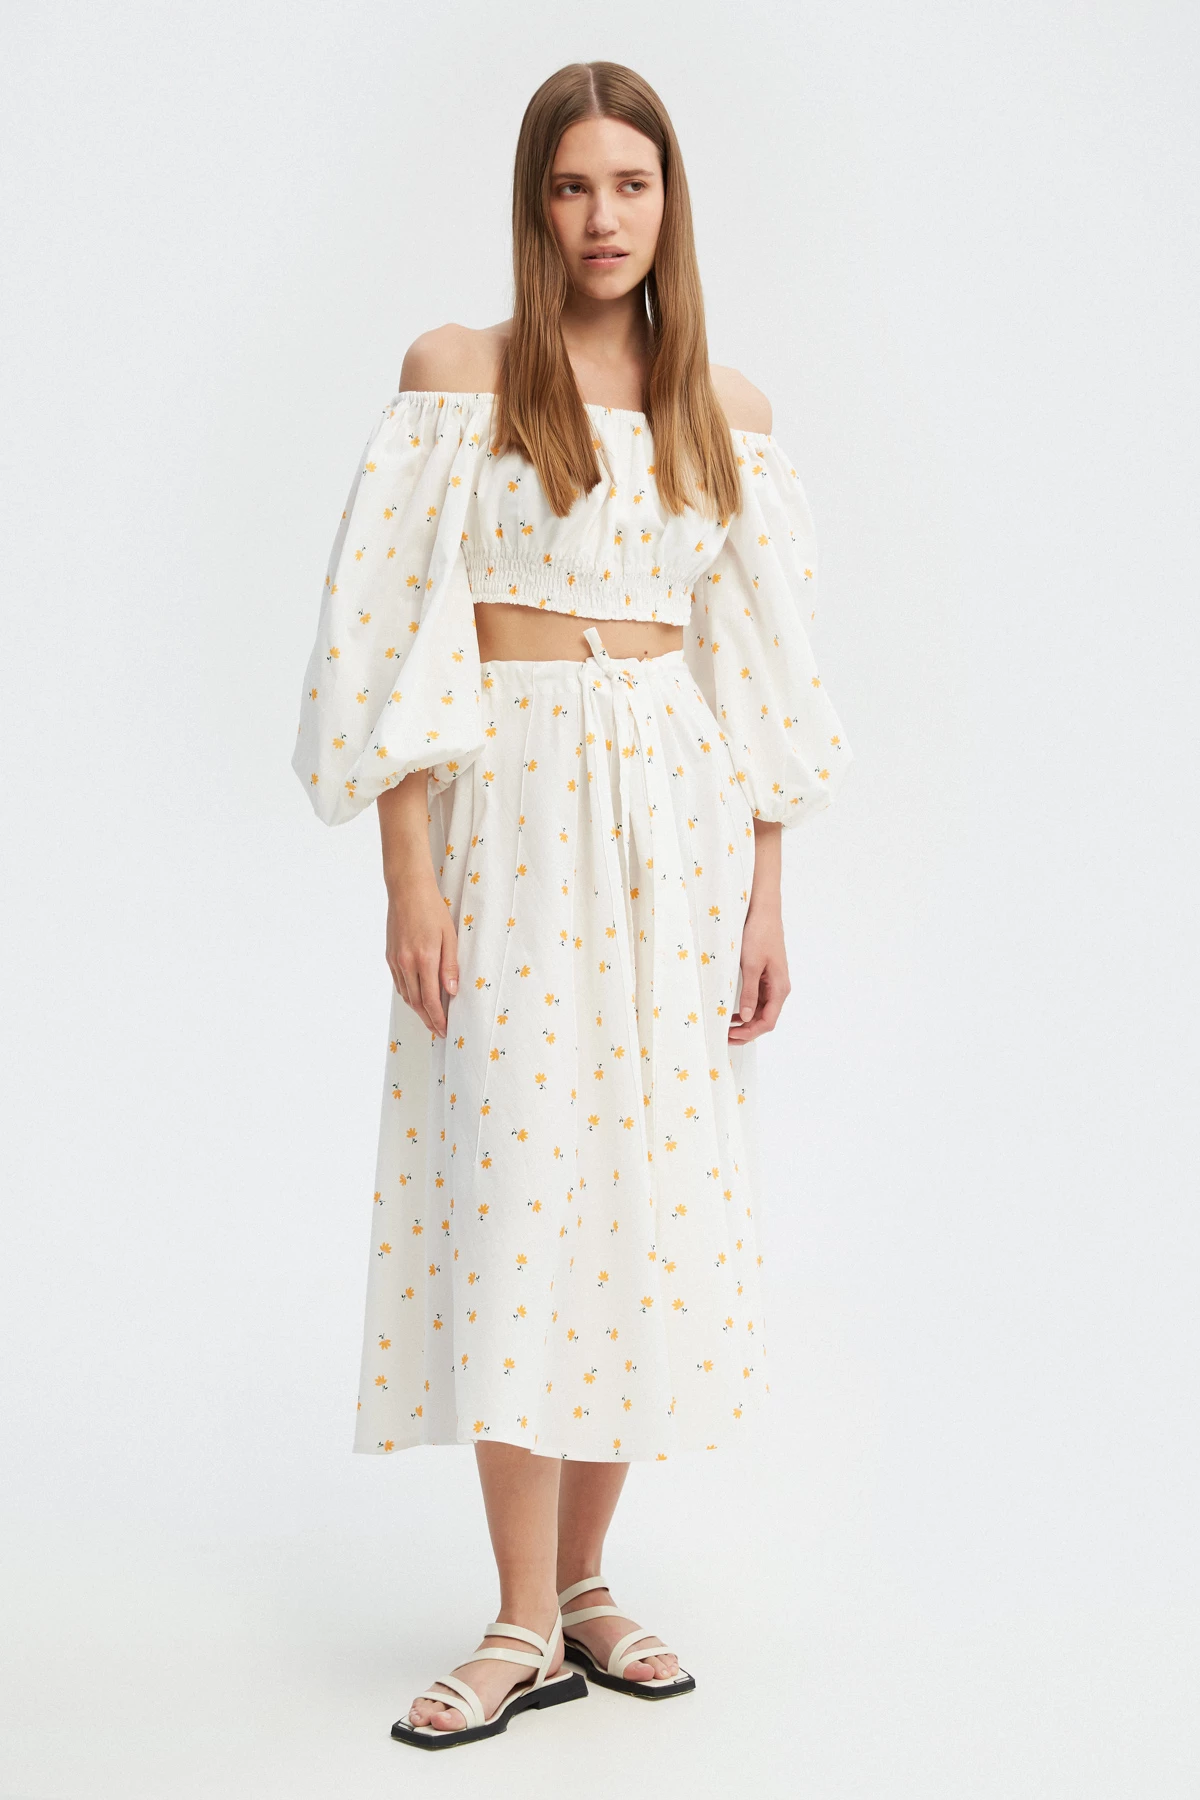 White cotton midi skirt with yellow flowers print, photo 1